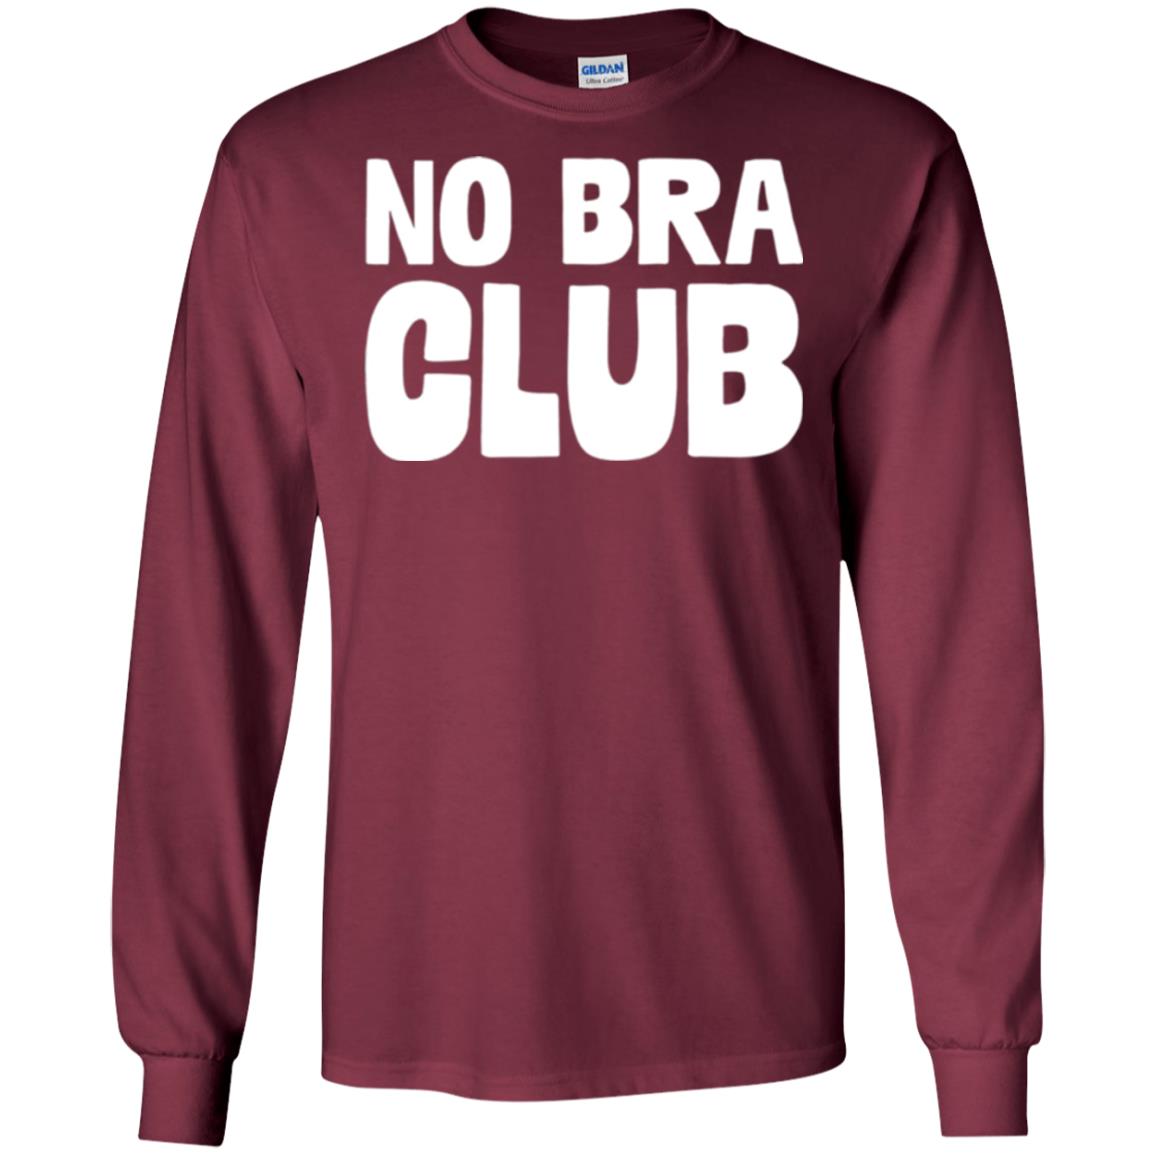 No Bra Club Shirt, No Bra Shirt, No Bra Club Tshirt, No Bra T Shirt,  Feminist Shirt, Funny Feminist Gift, Feminism Shirt, Girl Power Shirt 